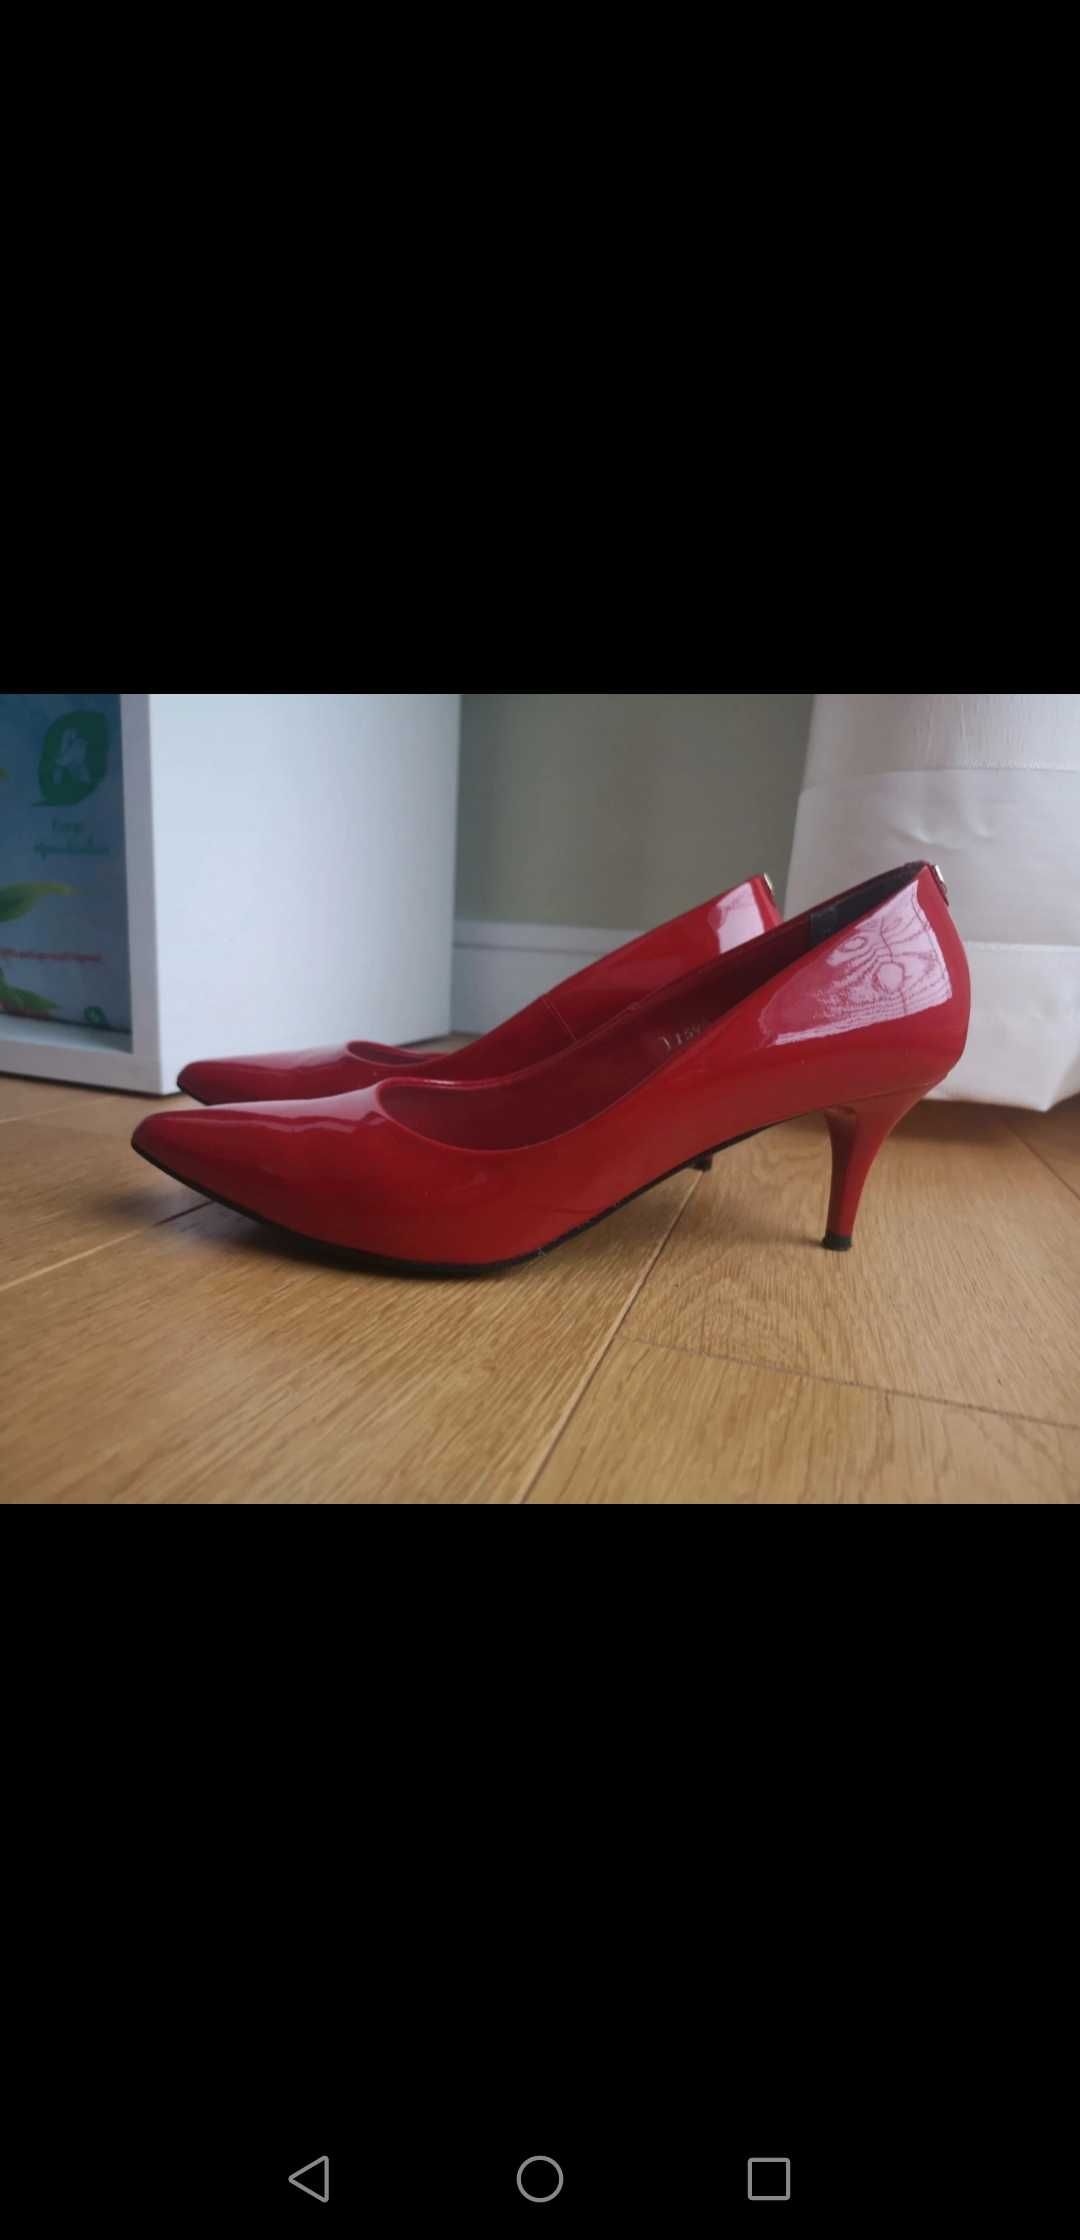 Nowe, czerwone, skórzane buty SALA rozmiar 38.5